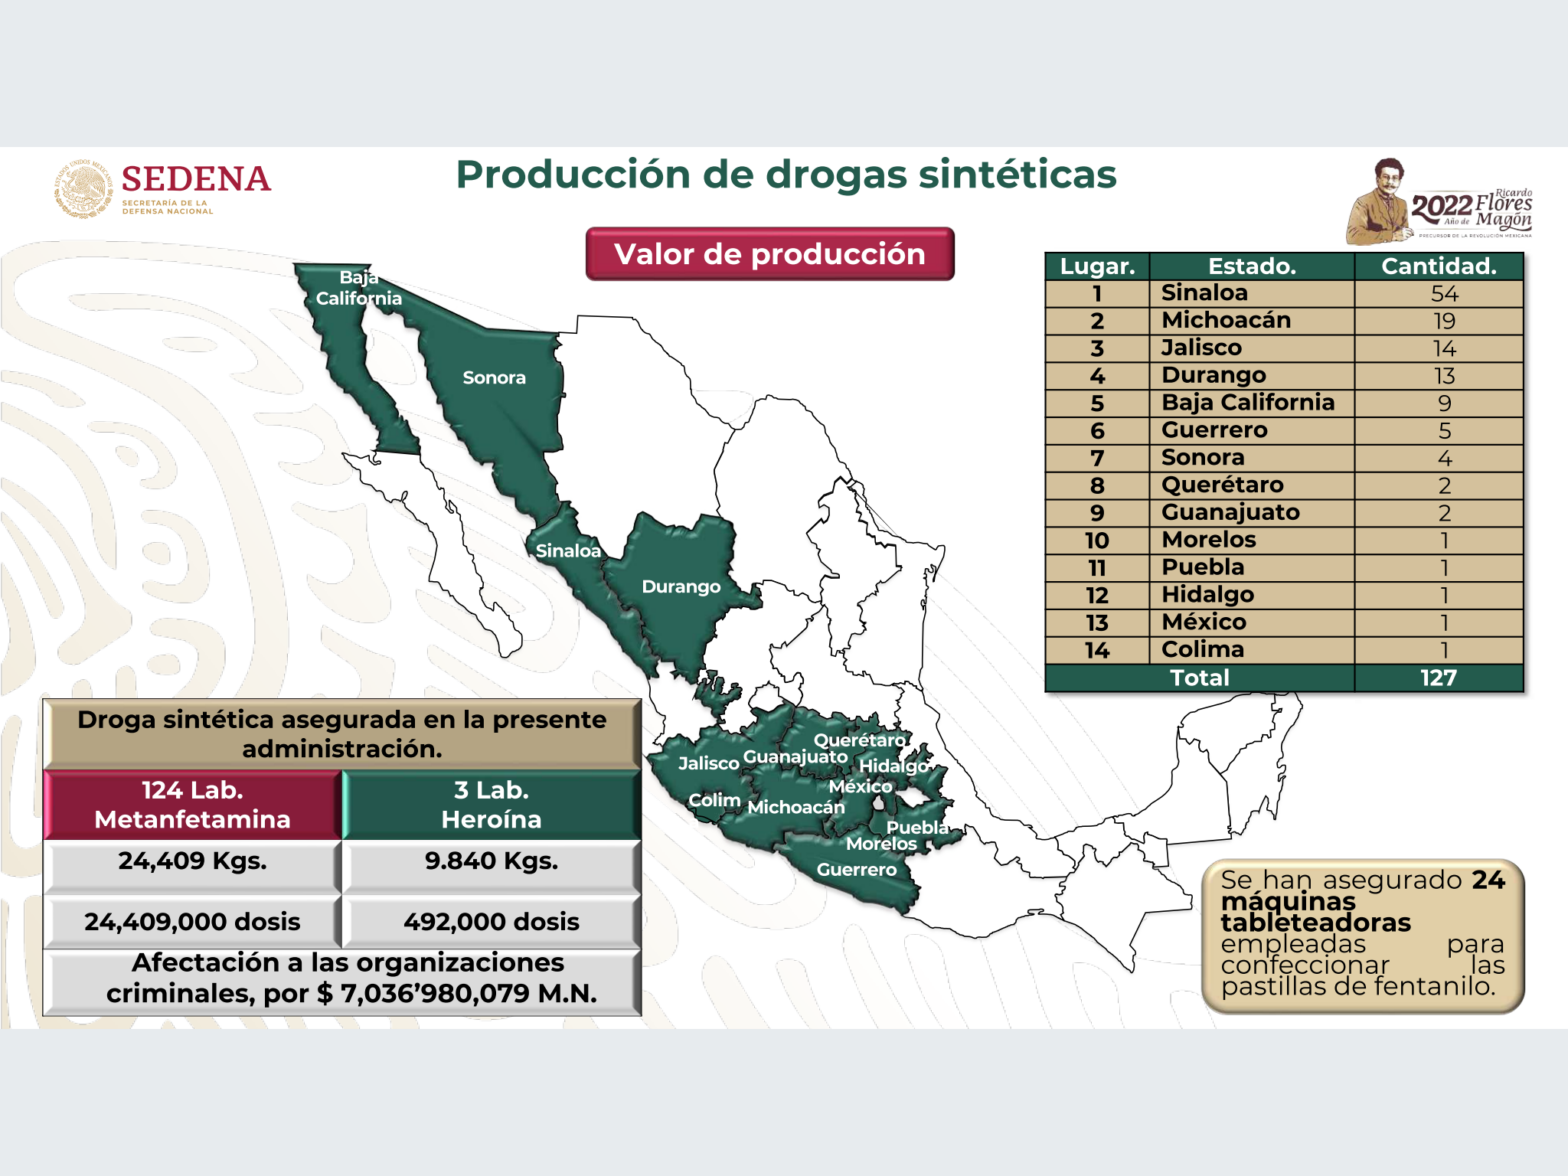 Producción de drogas sintéticas en México